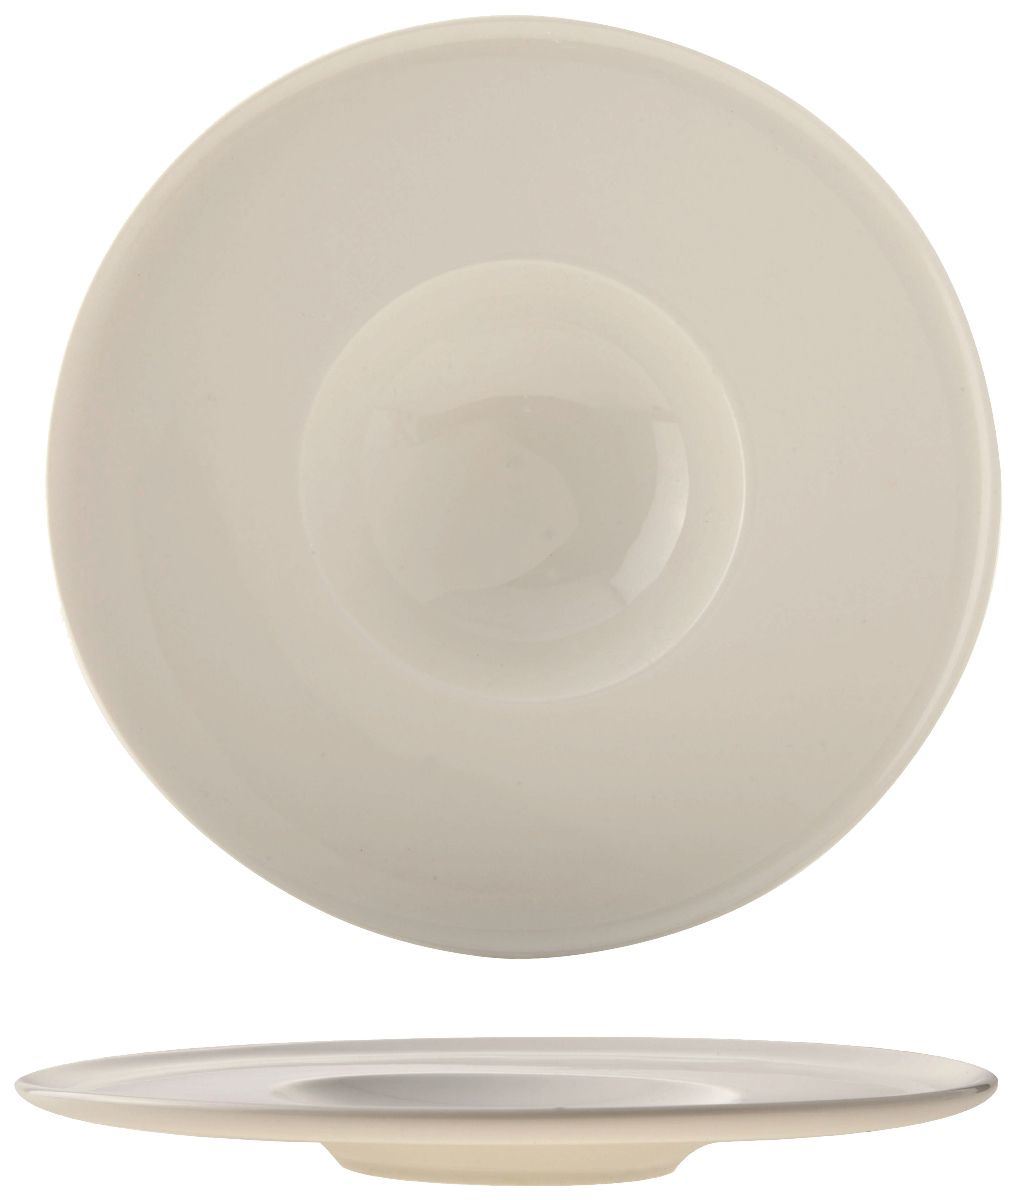 Assiette plate ronde Privilège blanc 22 cm Cosy for Pro